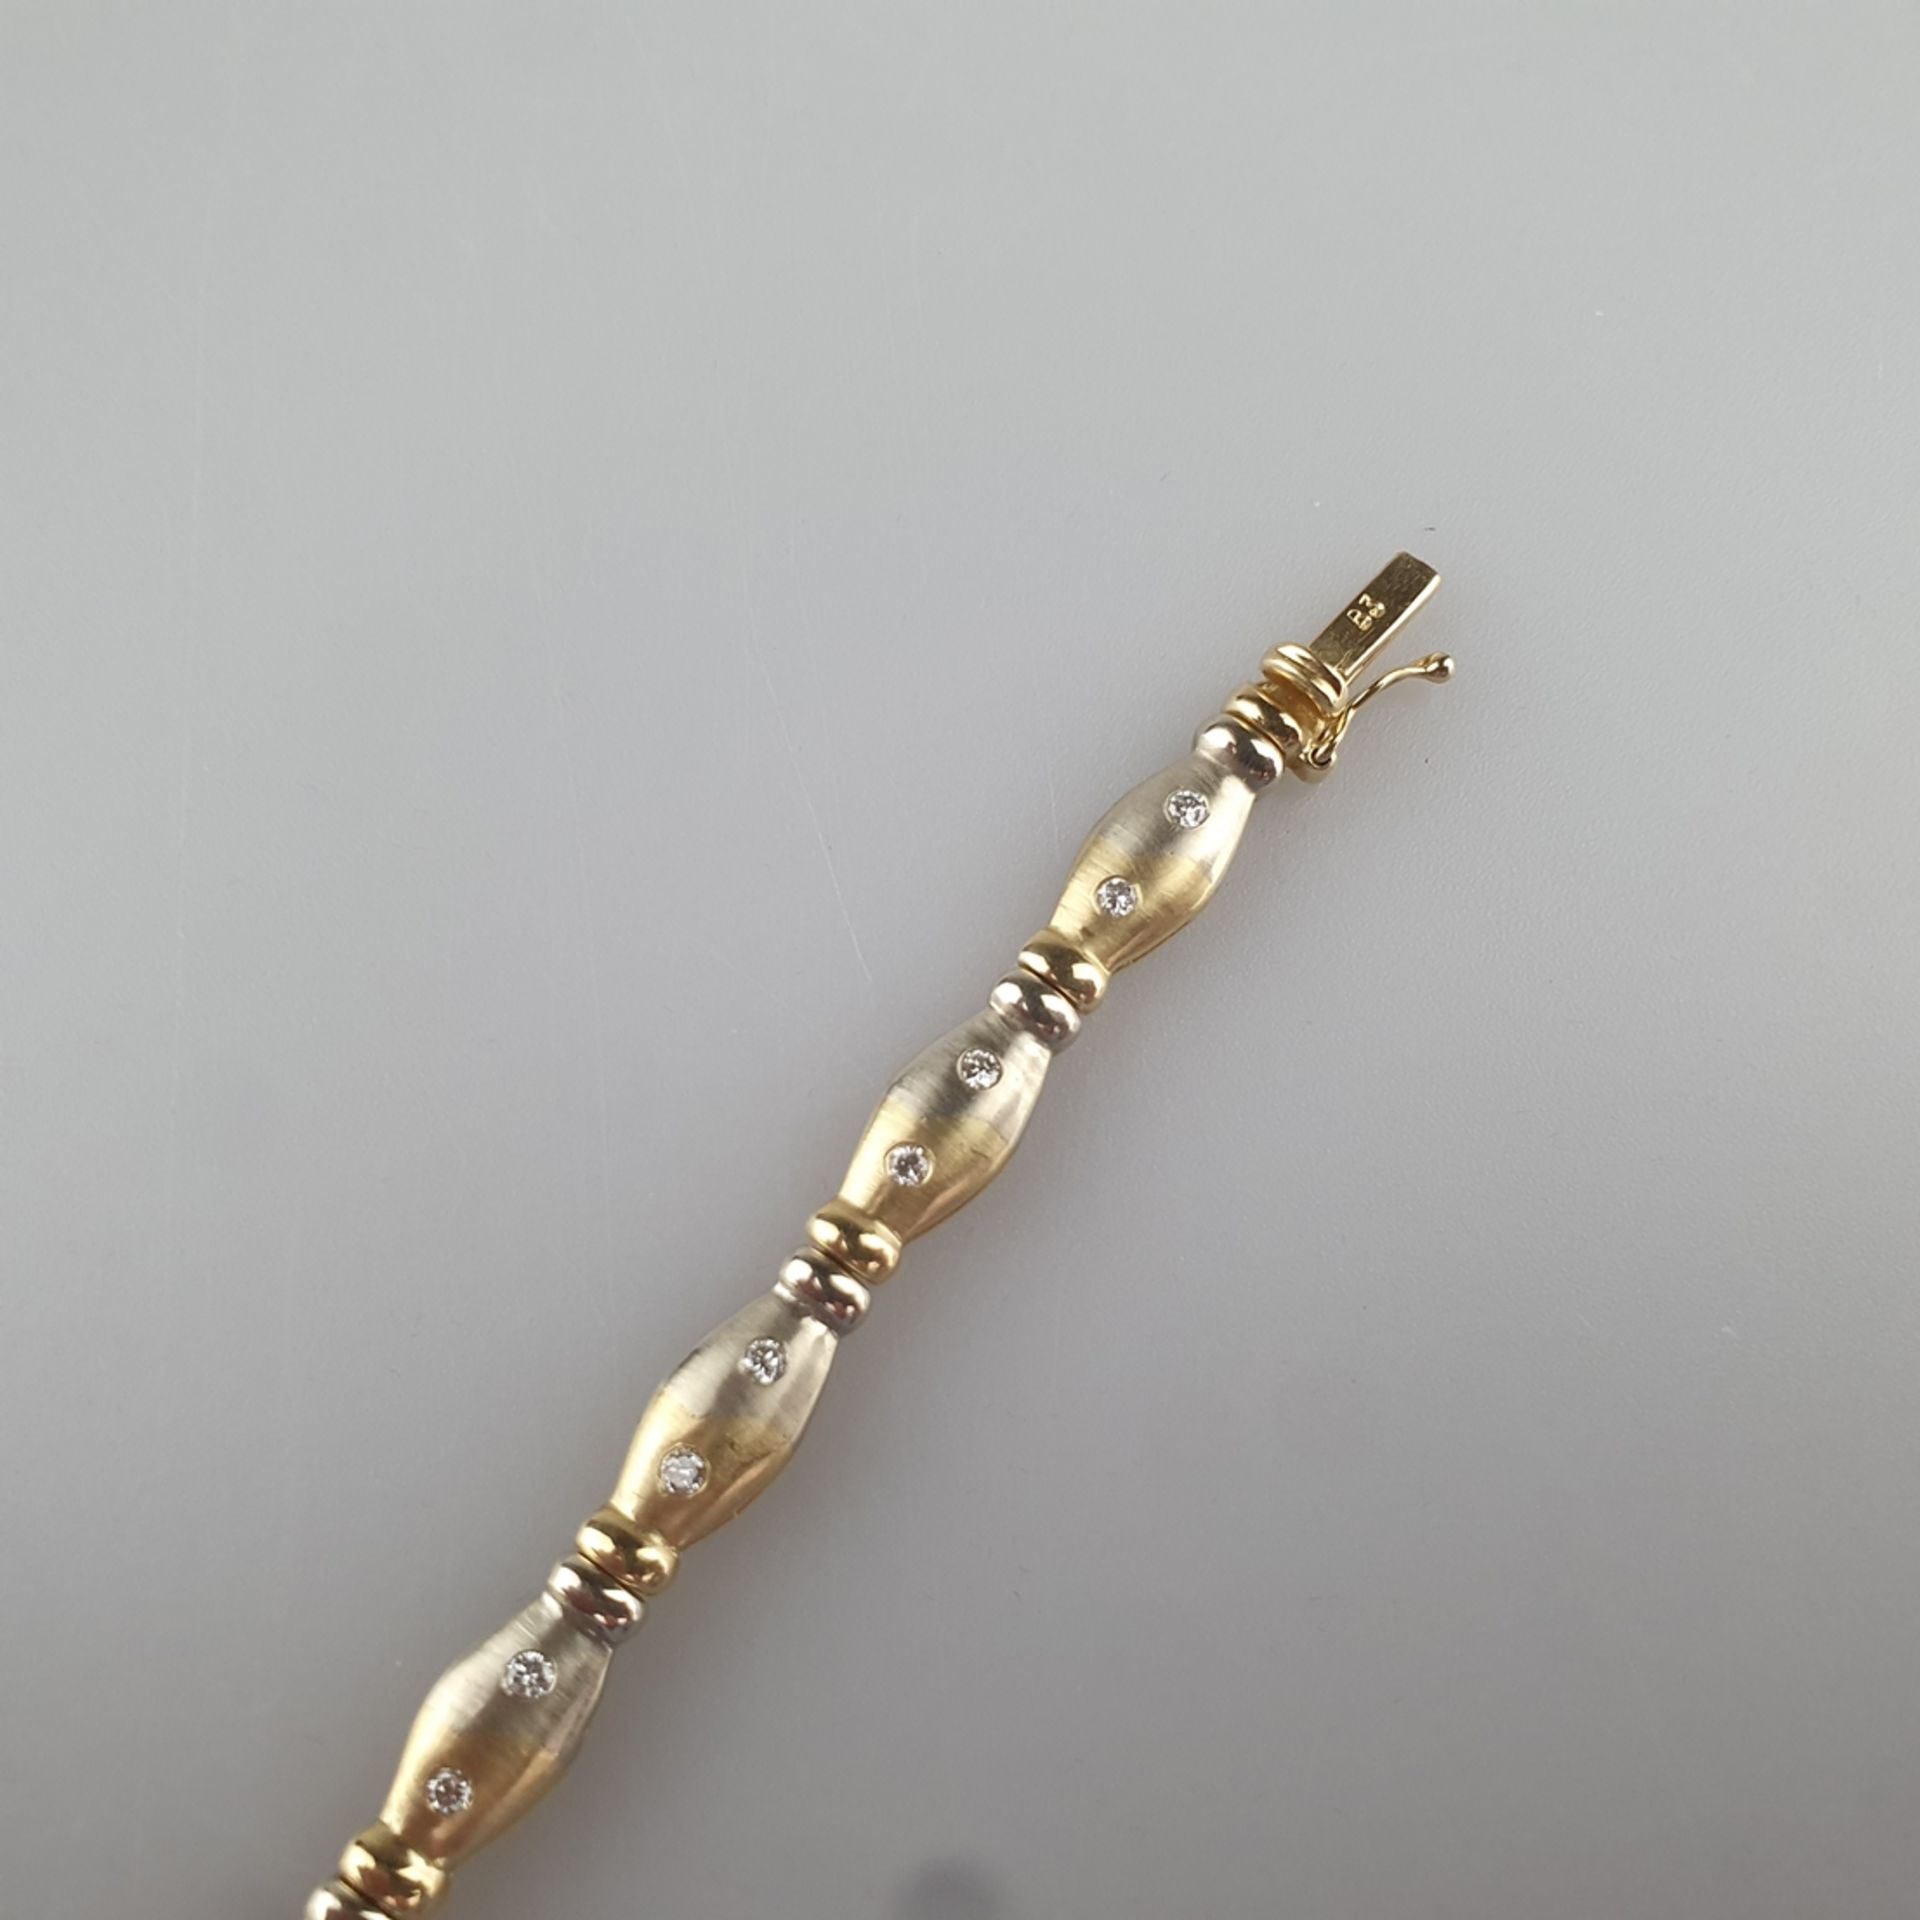 Bicolor-Diamantarmband - Gelb-/Weißgold 585/000 (14 K), gestempelt, ca. 6 mm breit, 11 Glieder bese - Image 4 of 5